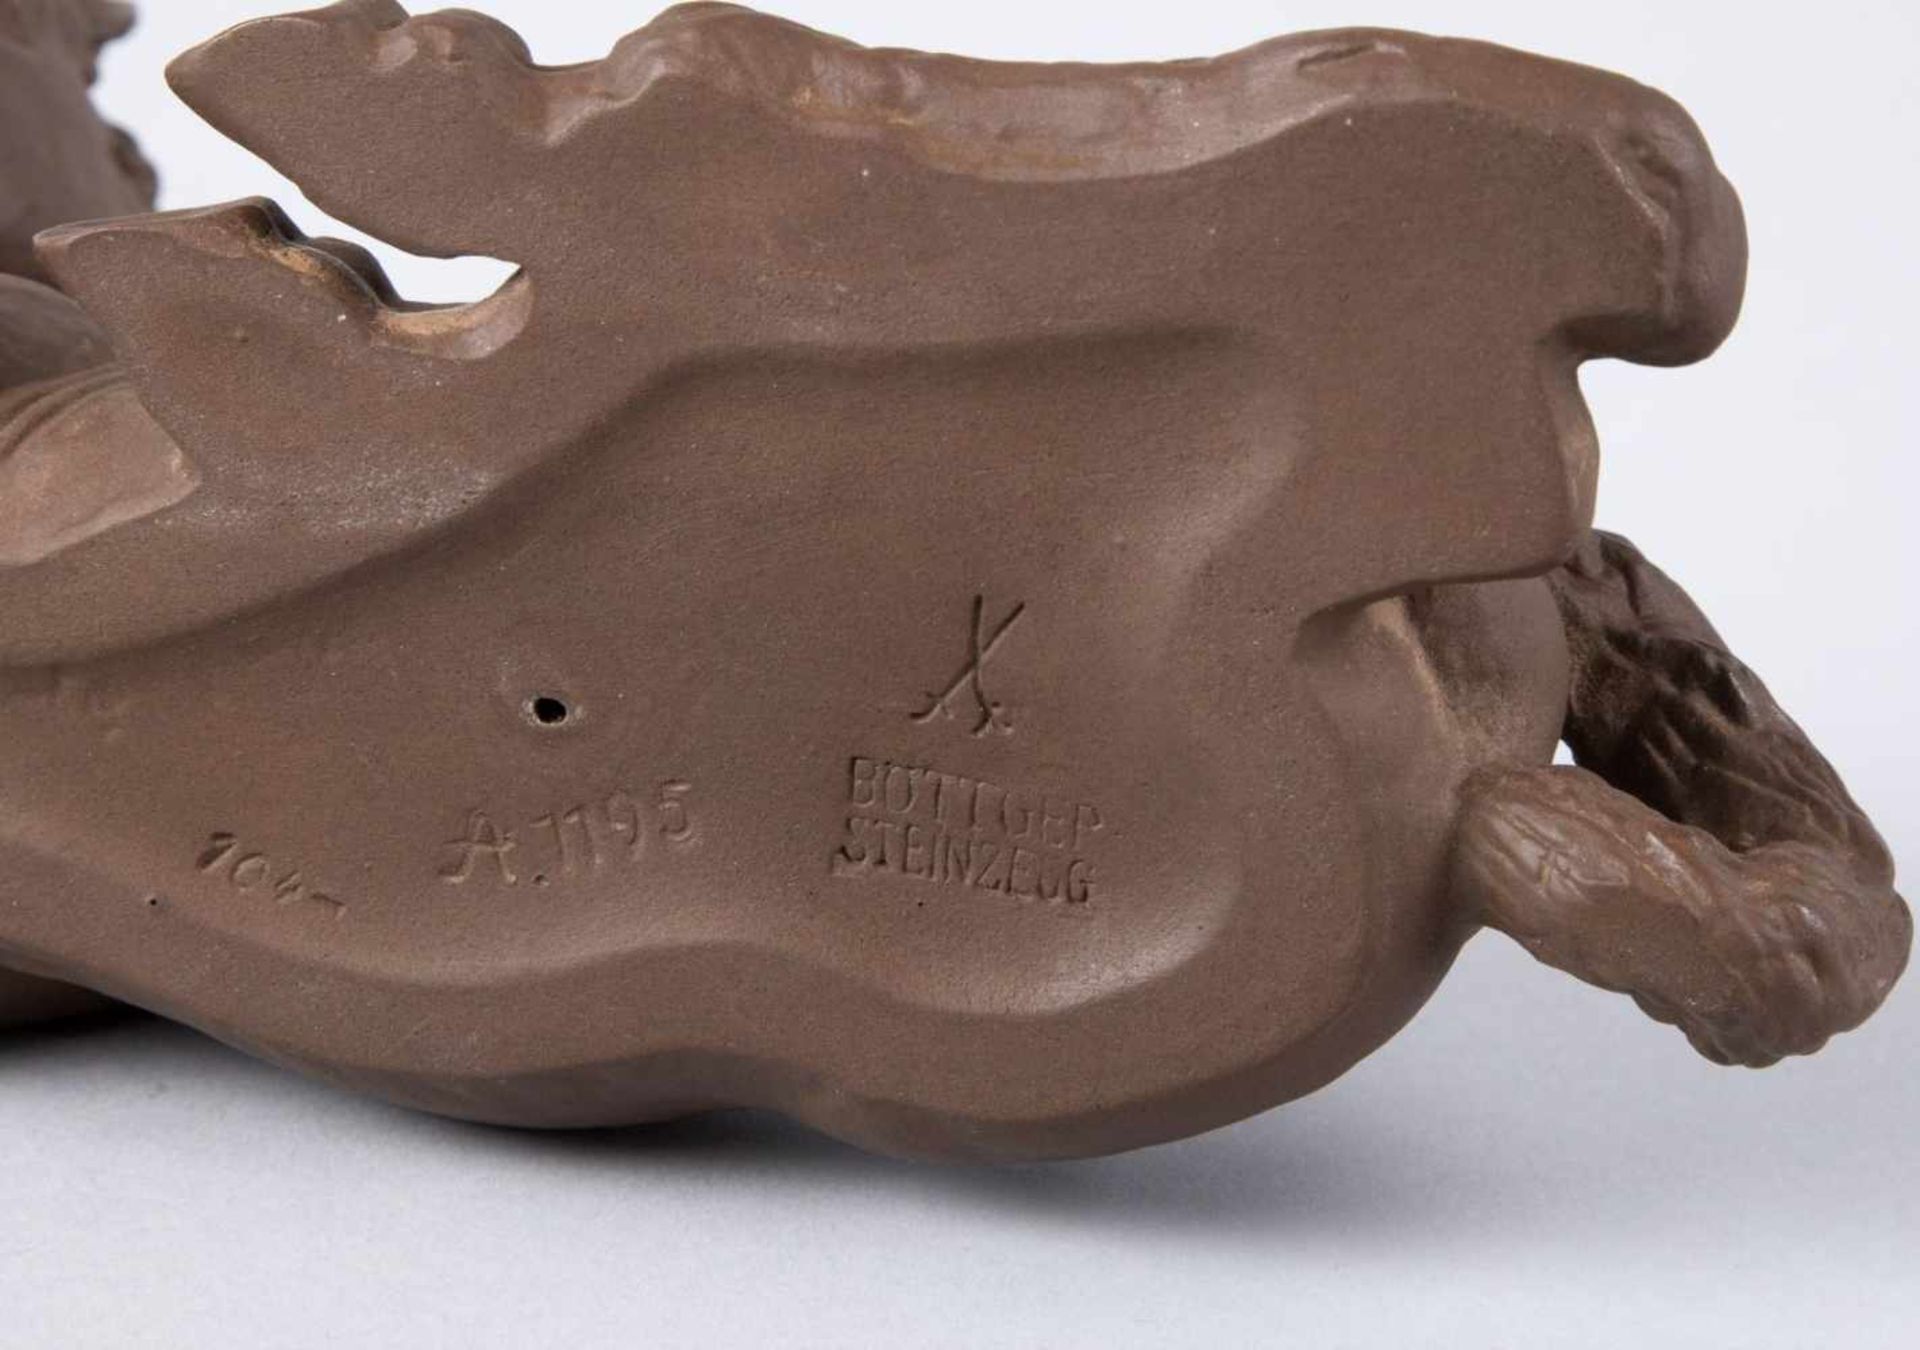 Liegendes FohlenBöttger Steinzeug. Marke: Meissen, nach 1934, Mod.Nr. A.1195. Nach Entwurf von Willi - Bild 2 aus 2